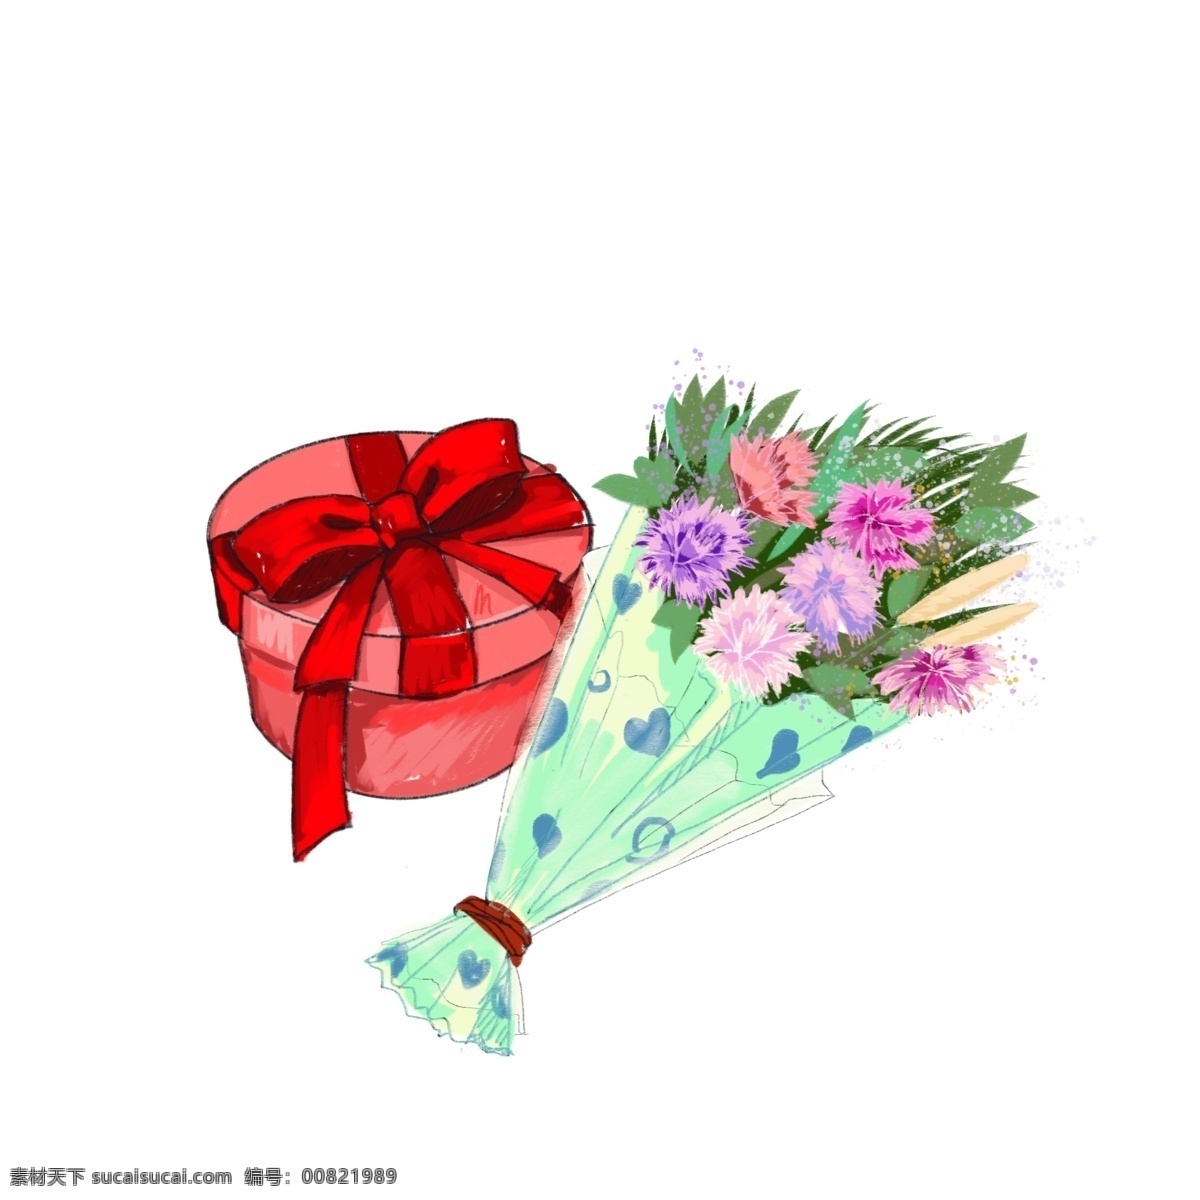 母亲节 礼物 康乃馨 节日 活动 花束 红色 装饰元素